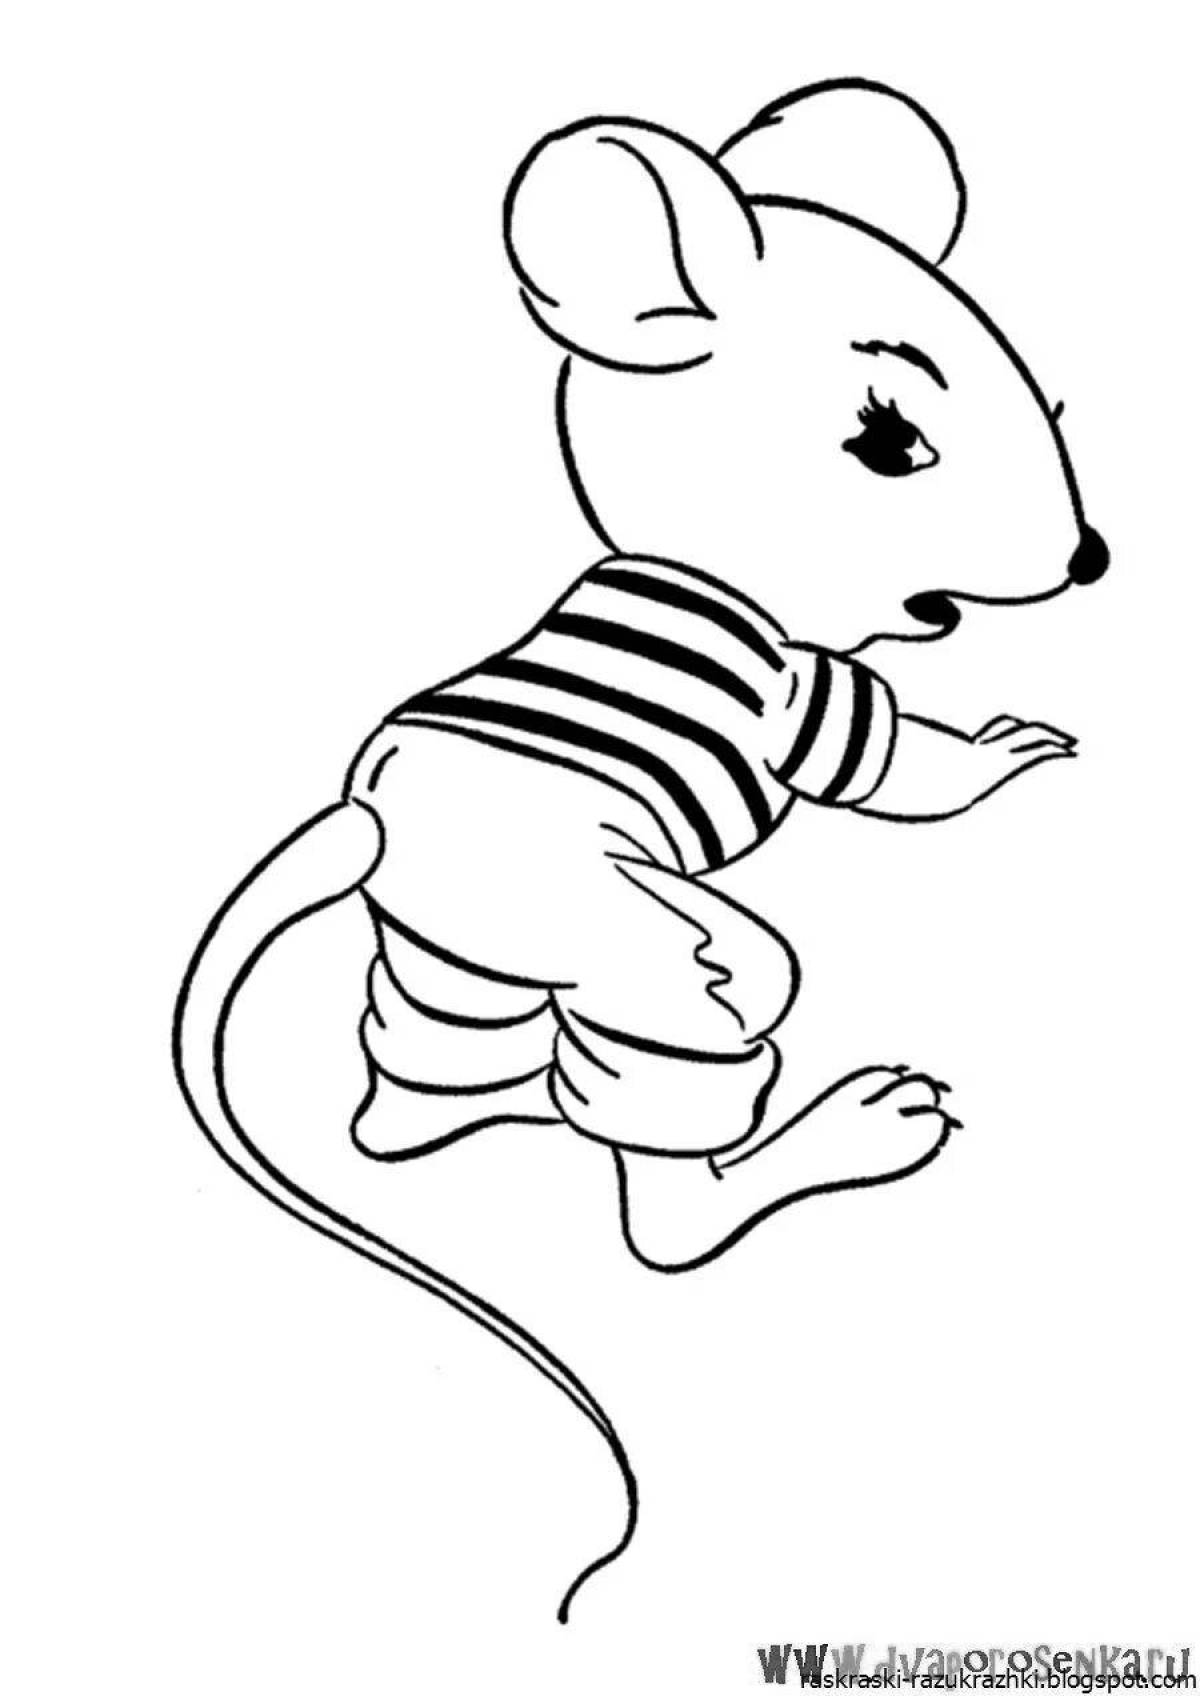 Увлекательная раскраска слабого мышонка